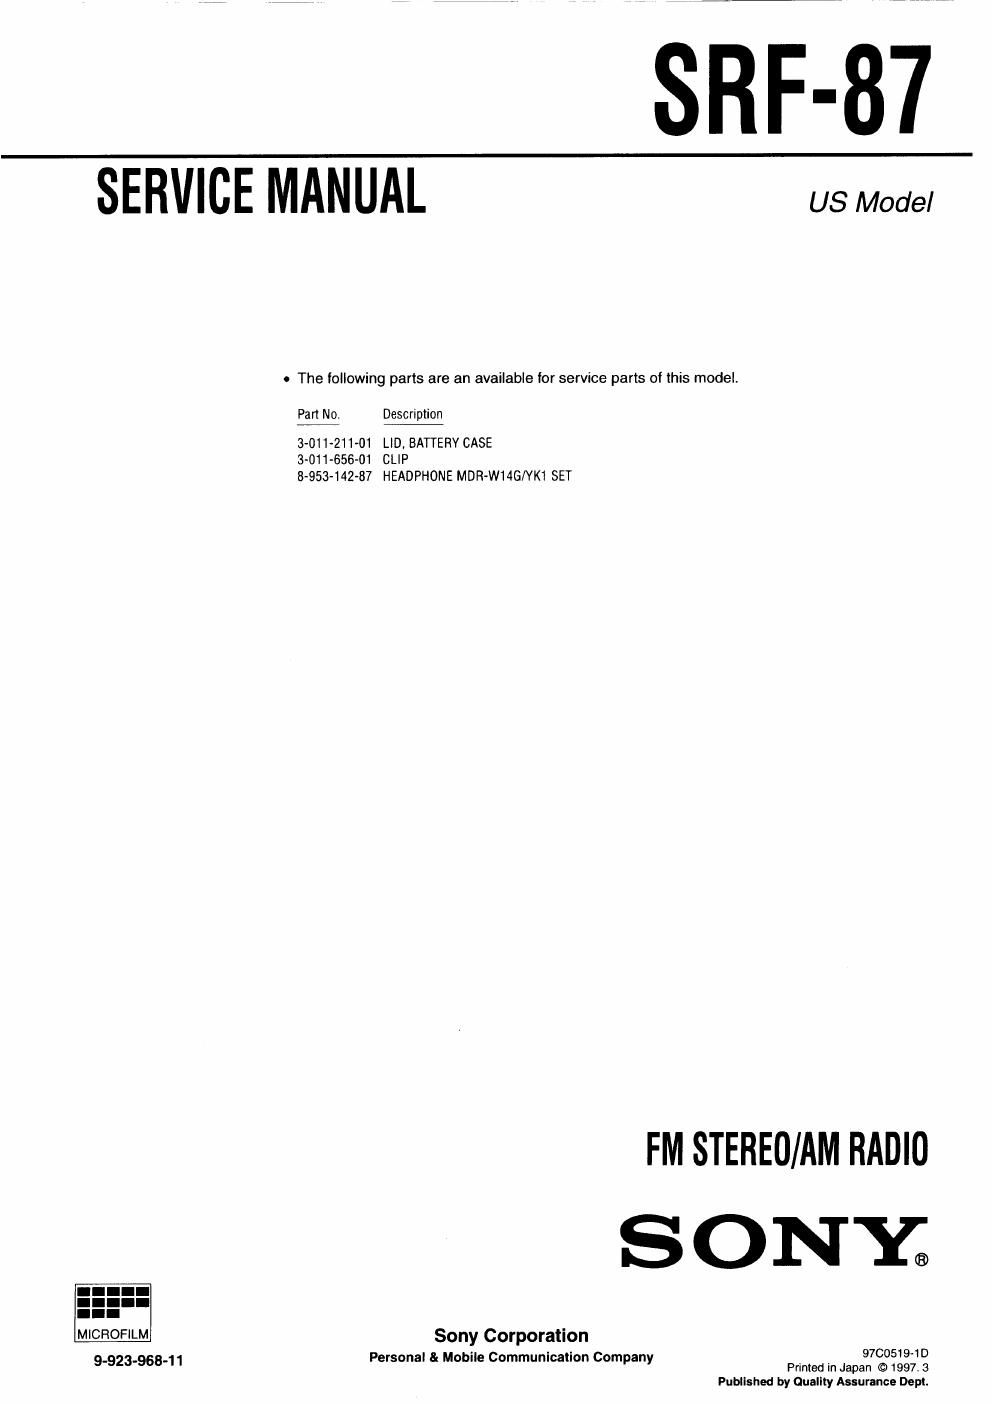 sony srf 87 service manual